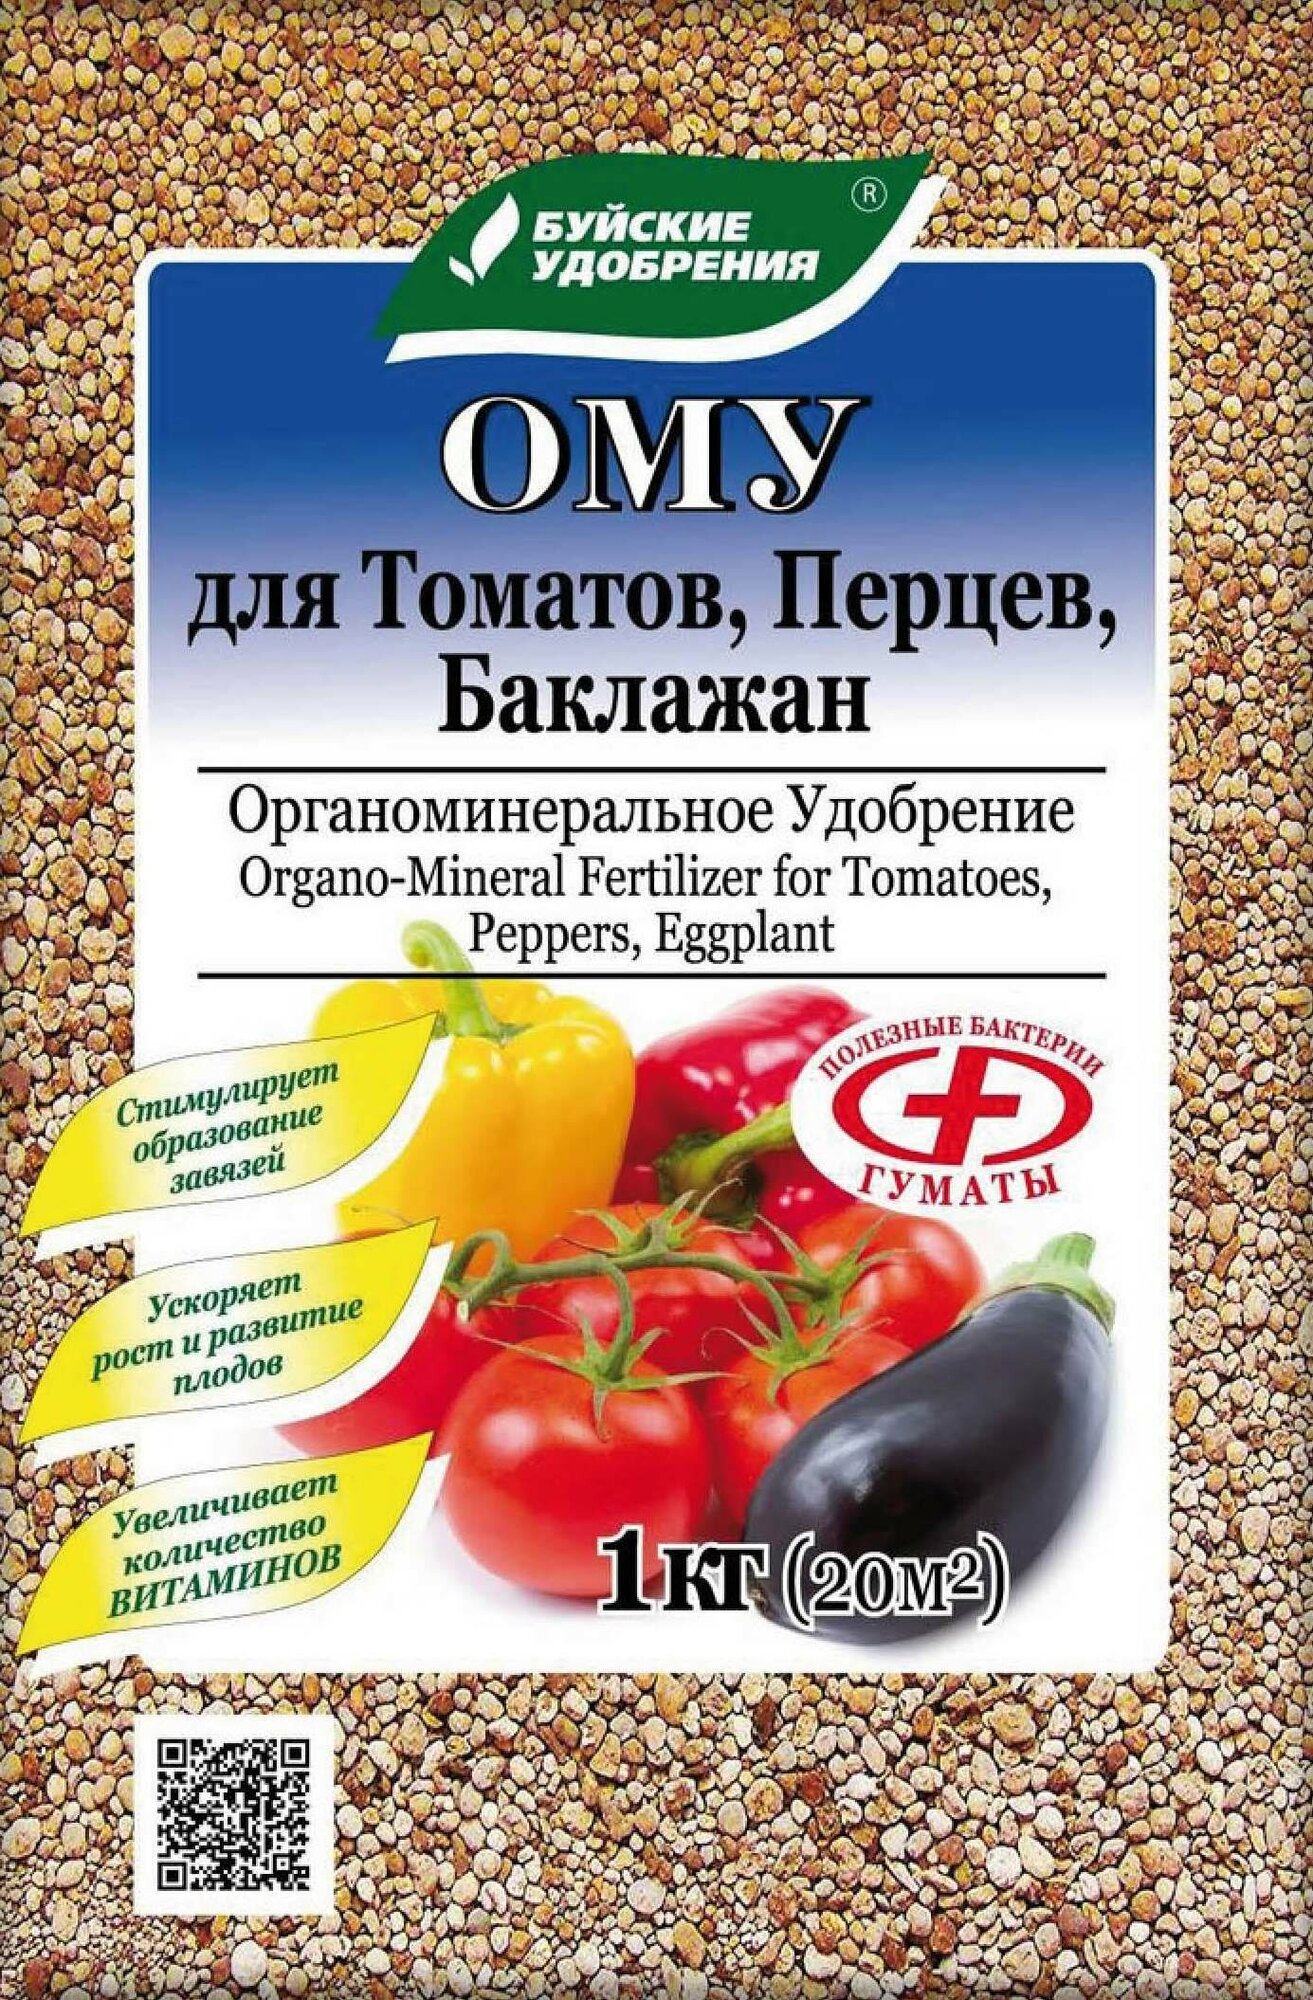 Органоминеральное удобрение "Буйские удобрения" для томатов, перцев, баклажанов, 1кг - фото №10